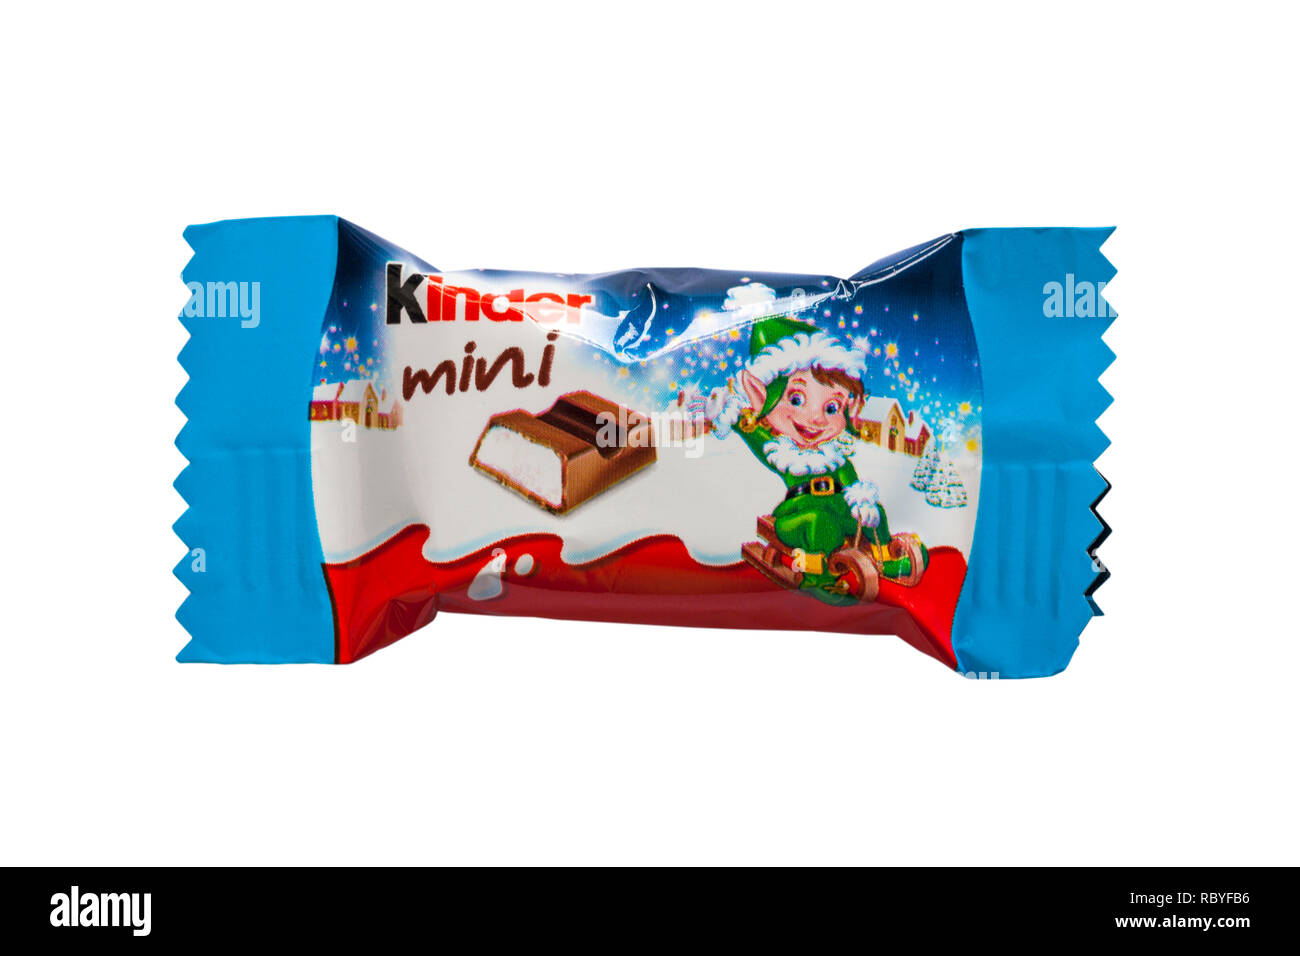 Kinder cioccolato mini bar isolato su sfondo bianco - elf design